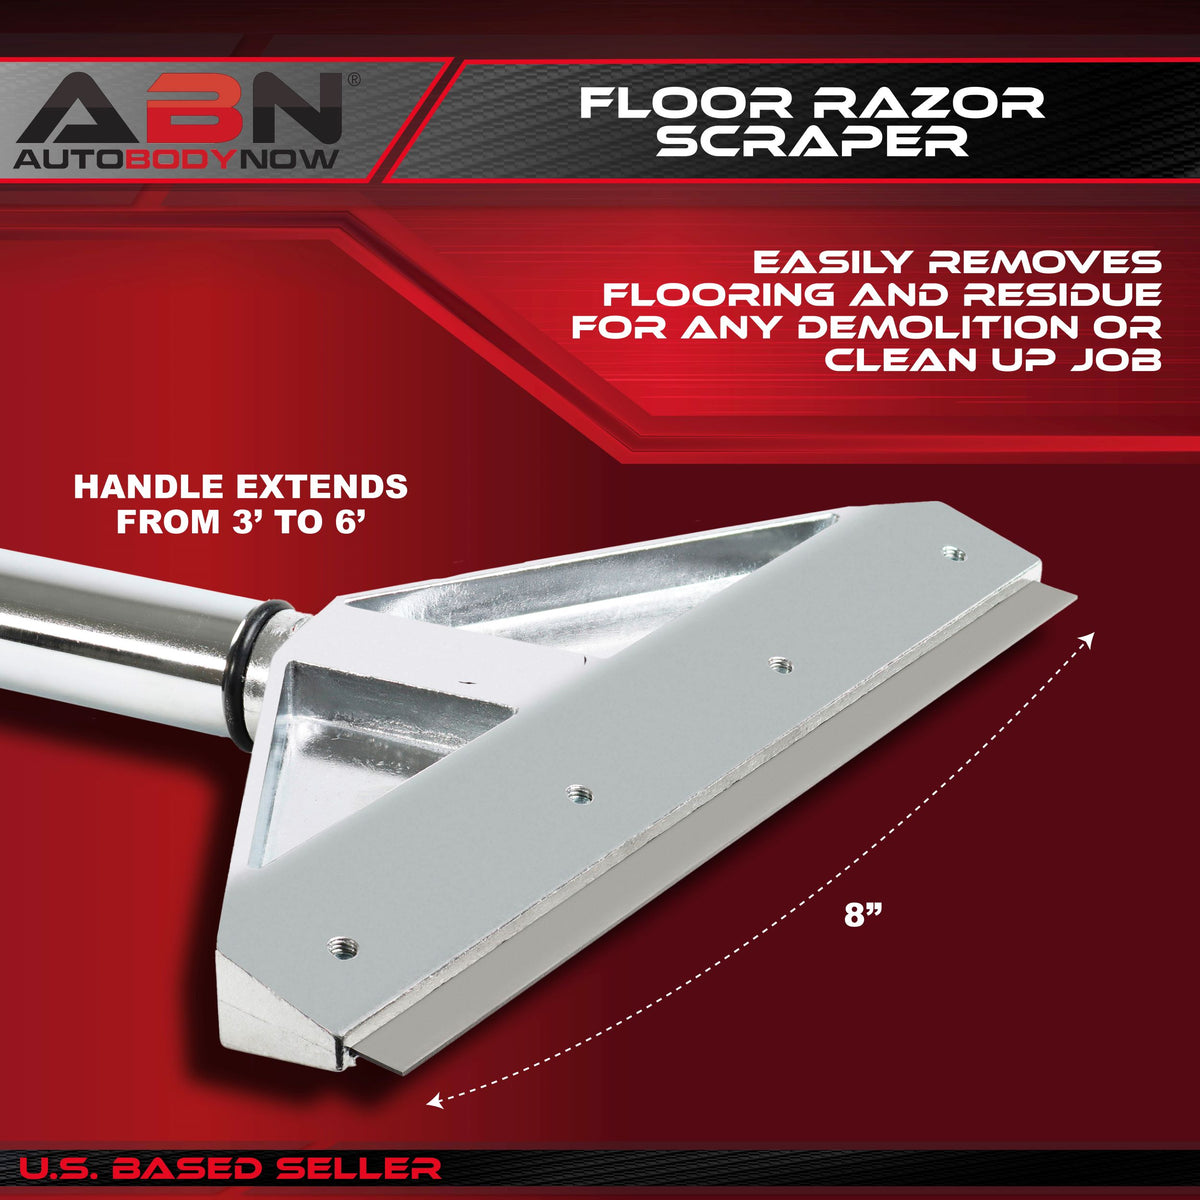 Flooring Razor Scraper 8” Inch Telescoping Floor Razor Blade Scraper